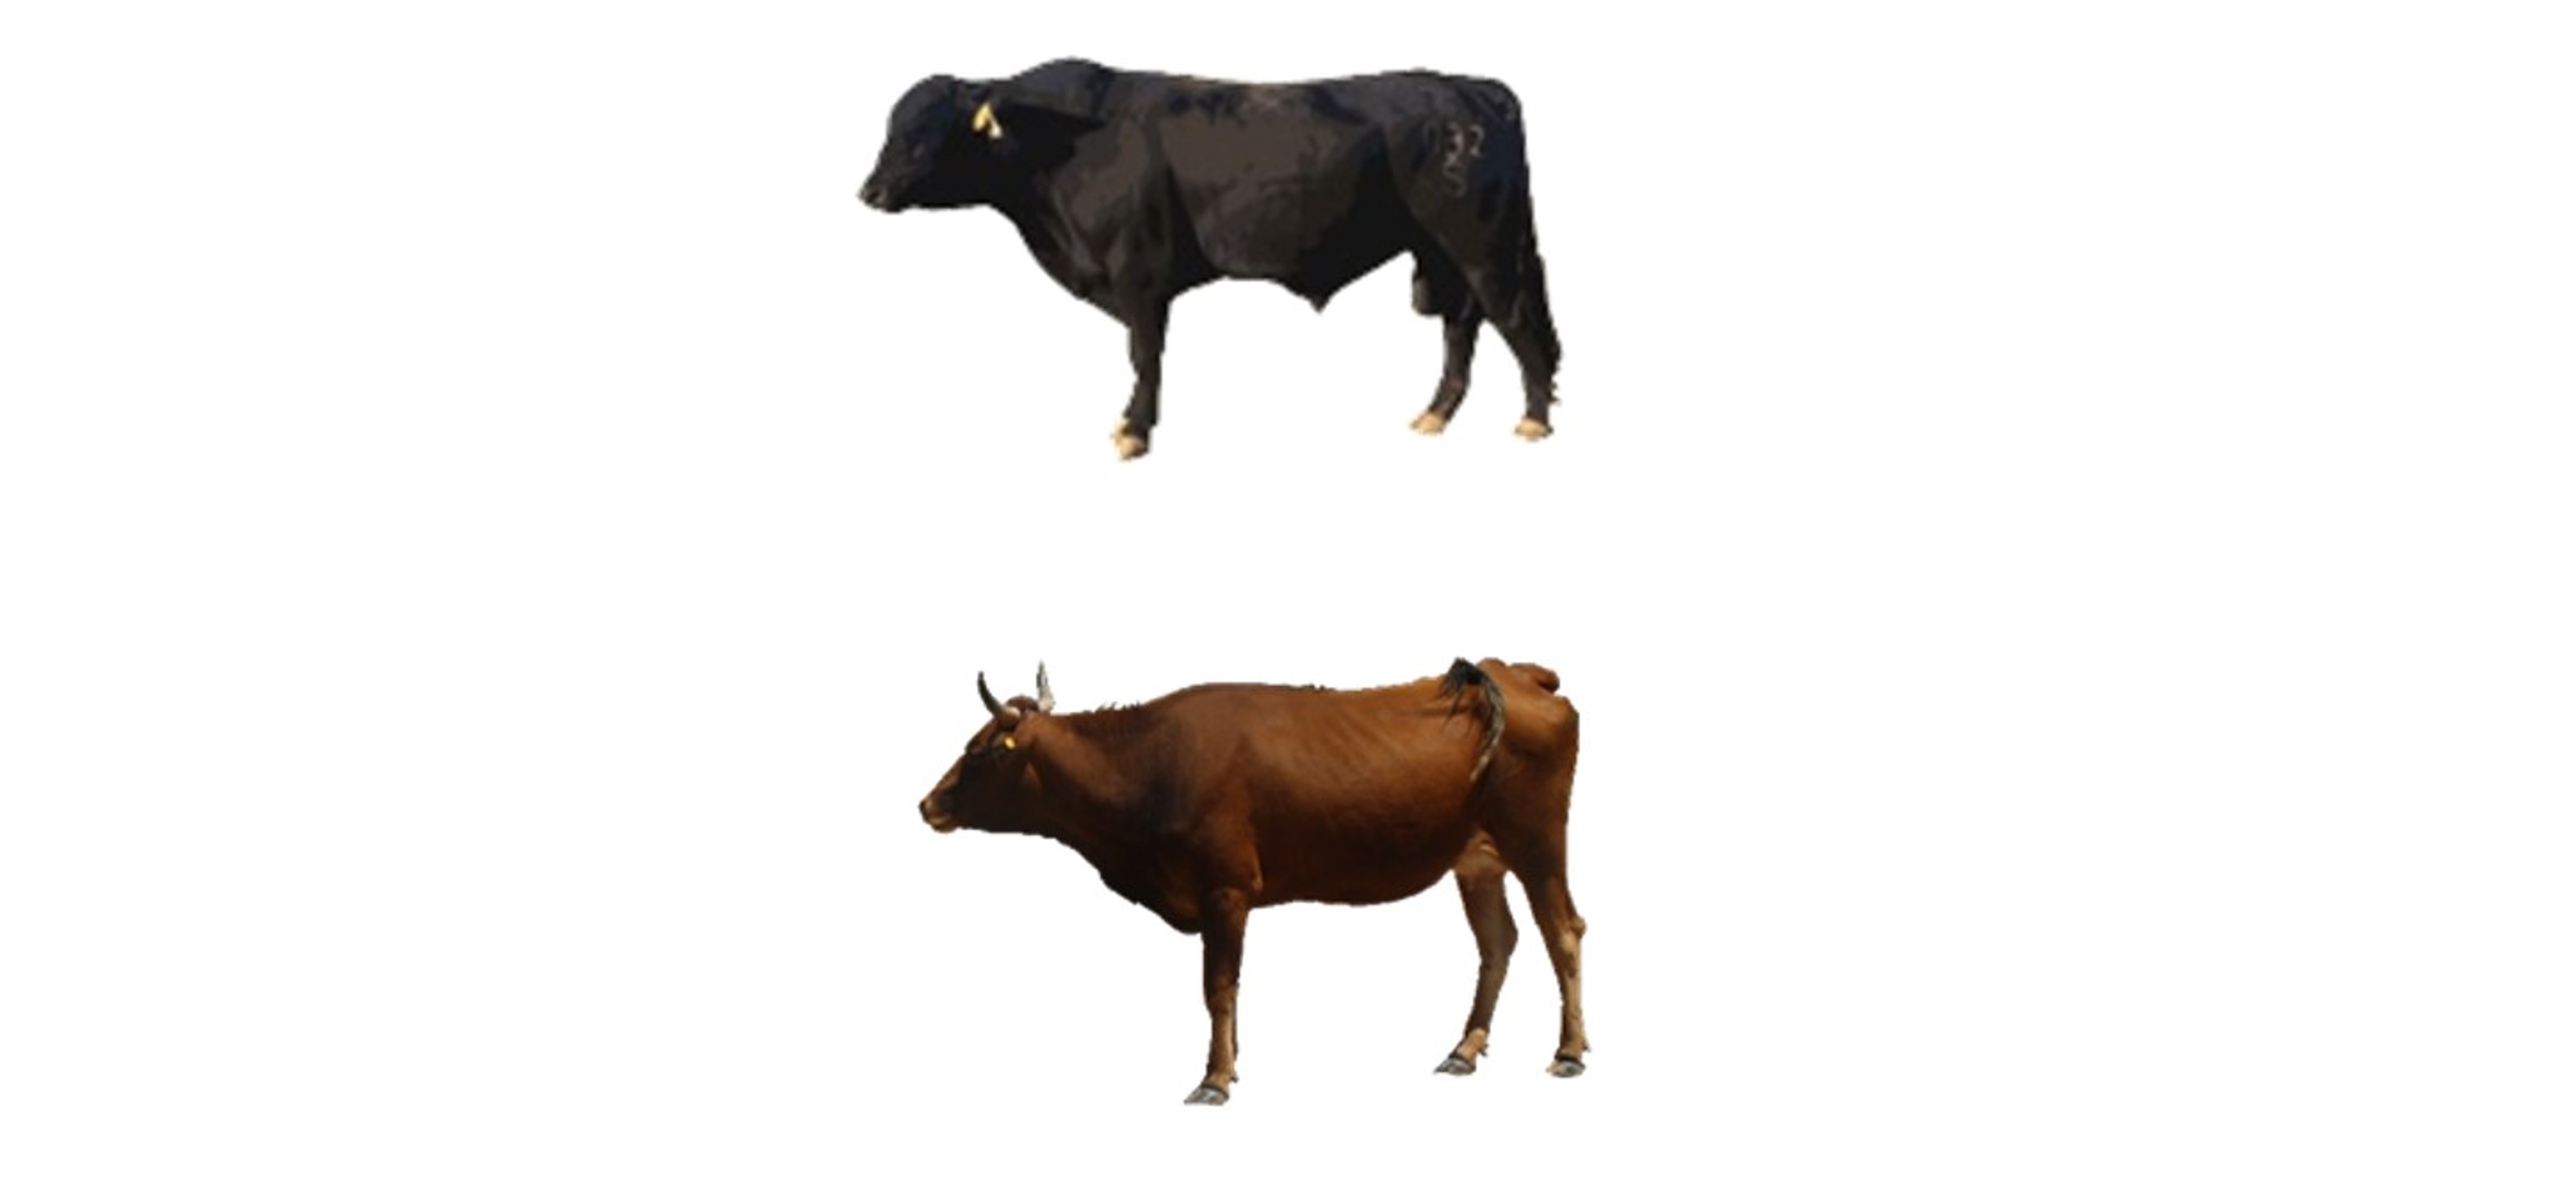 Desert adapted cattle